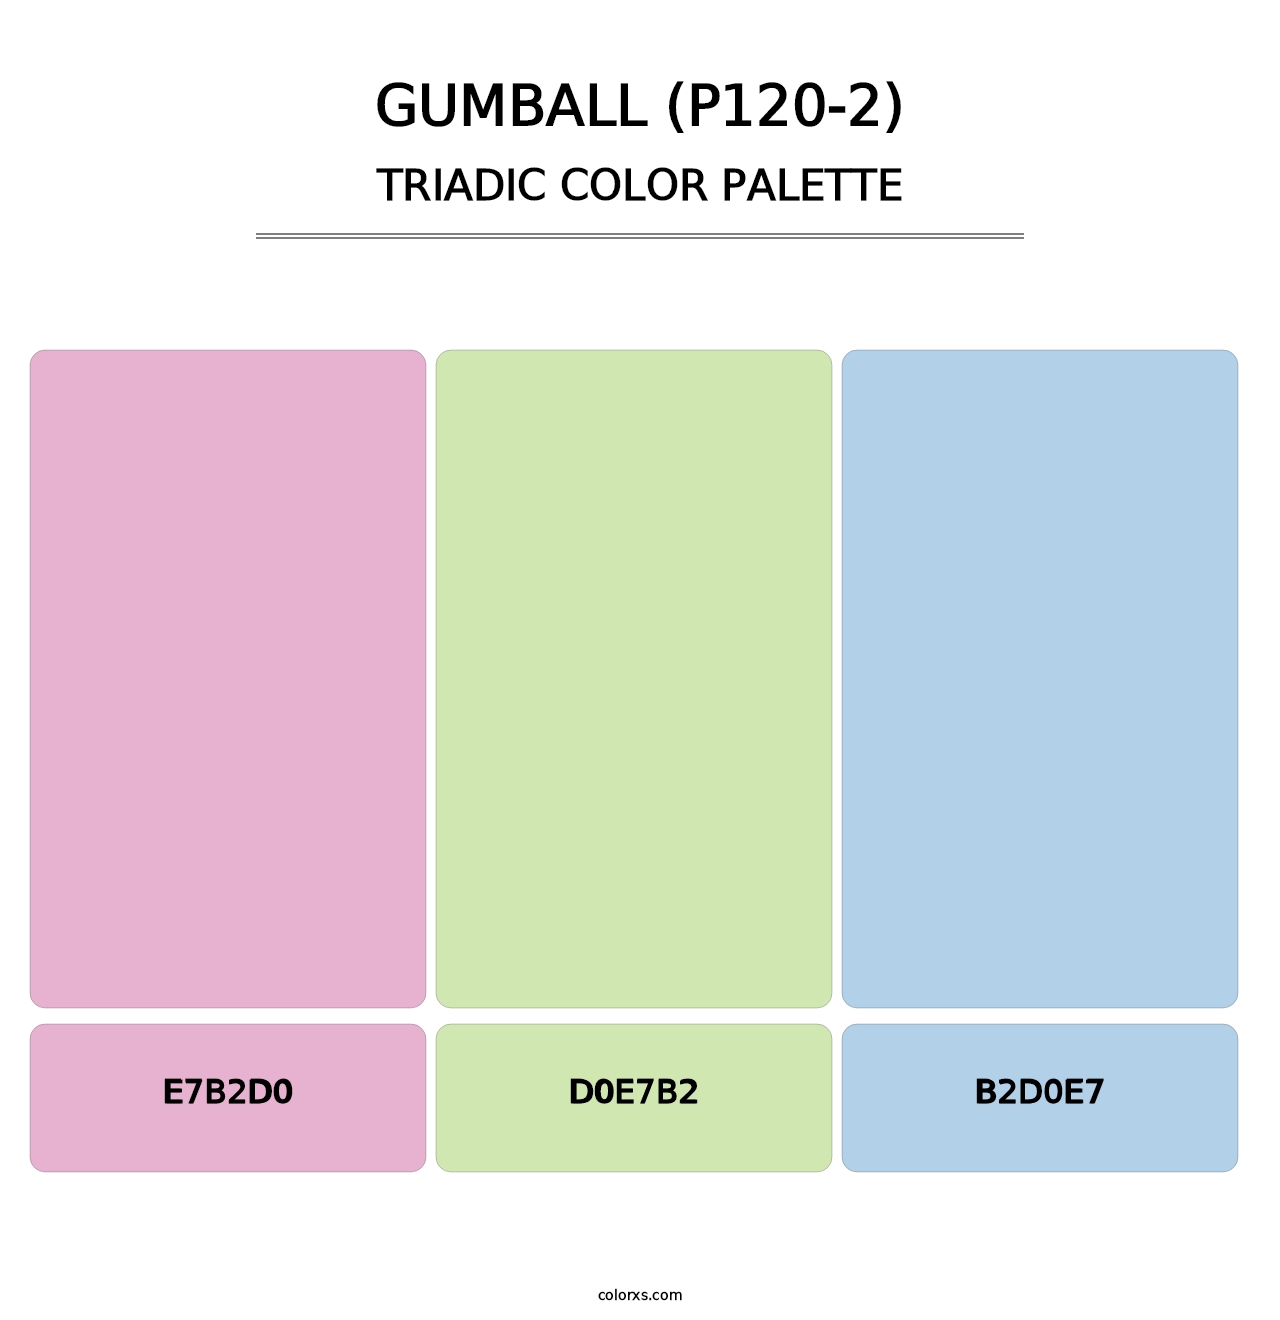 Gumball (P120-2) - Triadic Color Palette